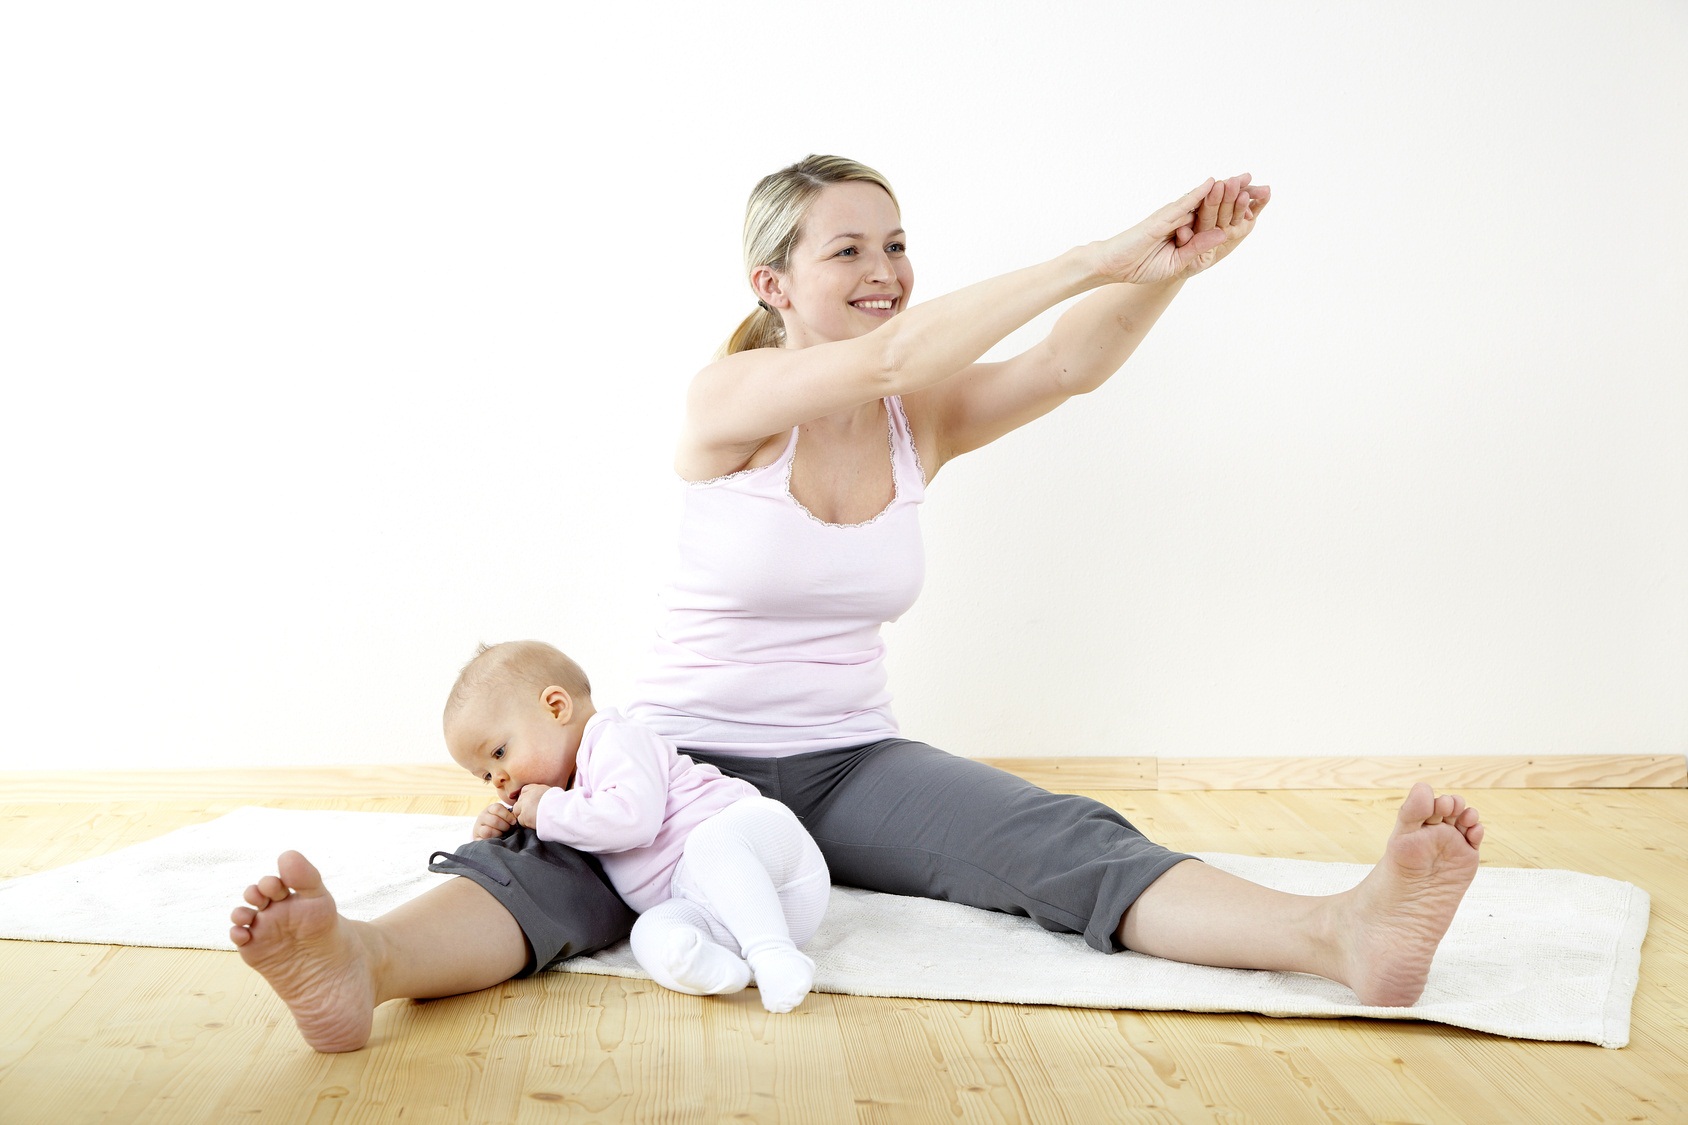 Восстановить форму после родов сложно даже при хорошей физической подготовке